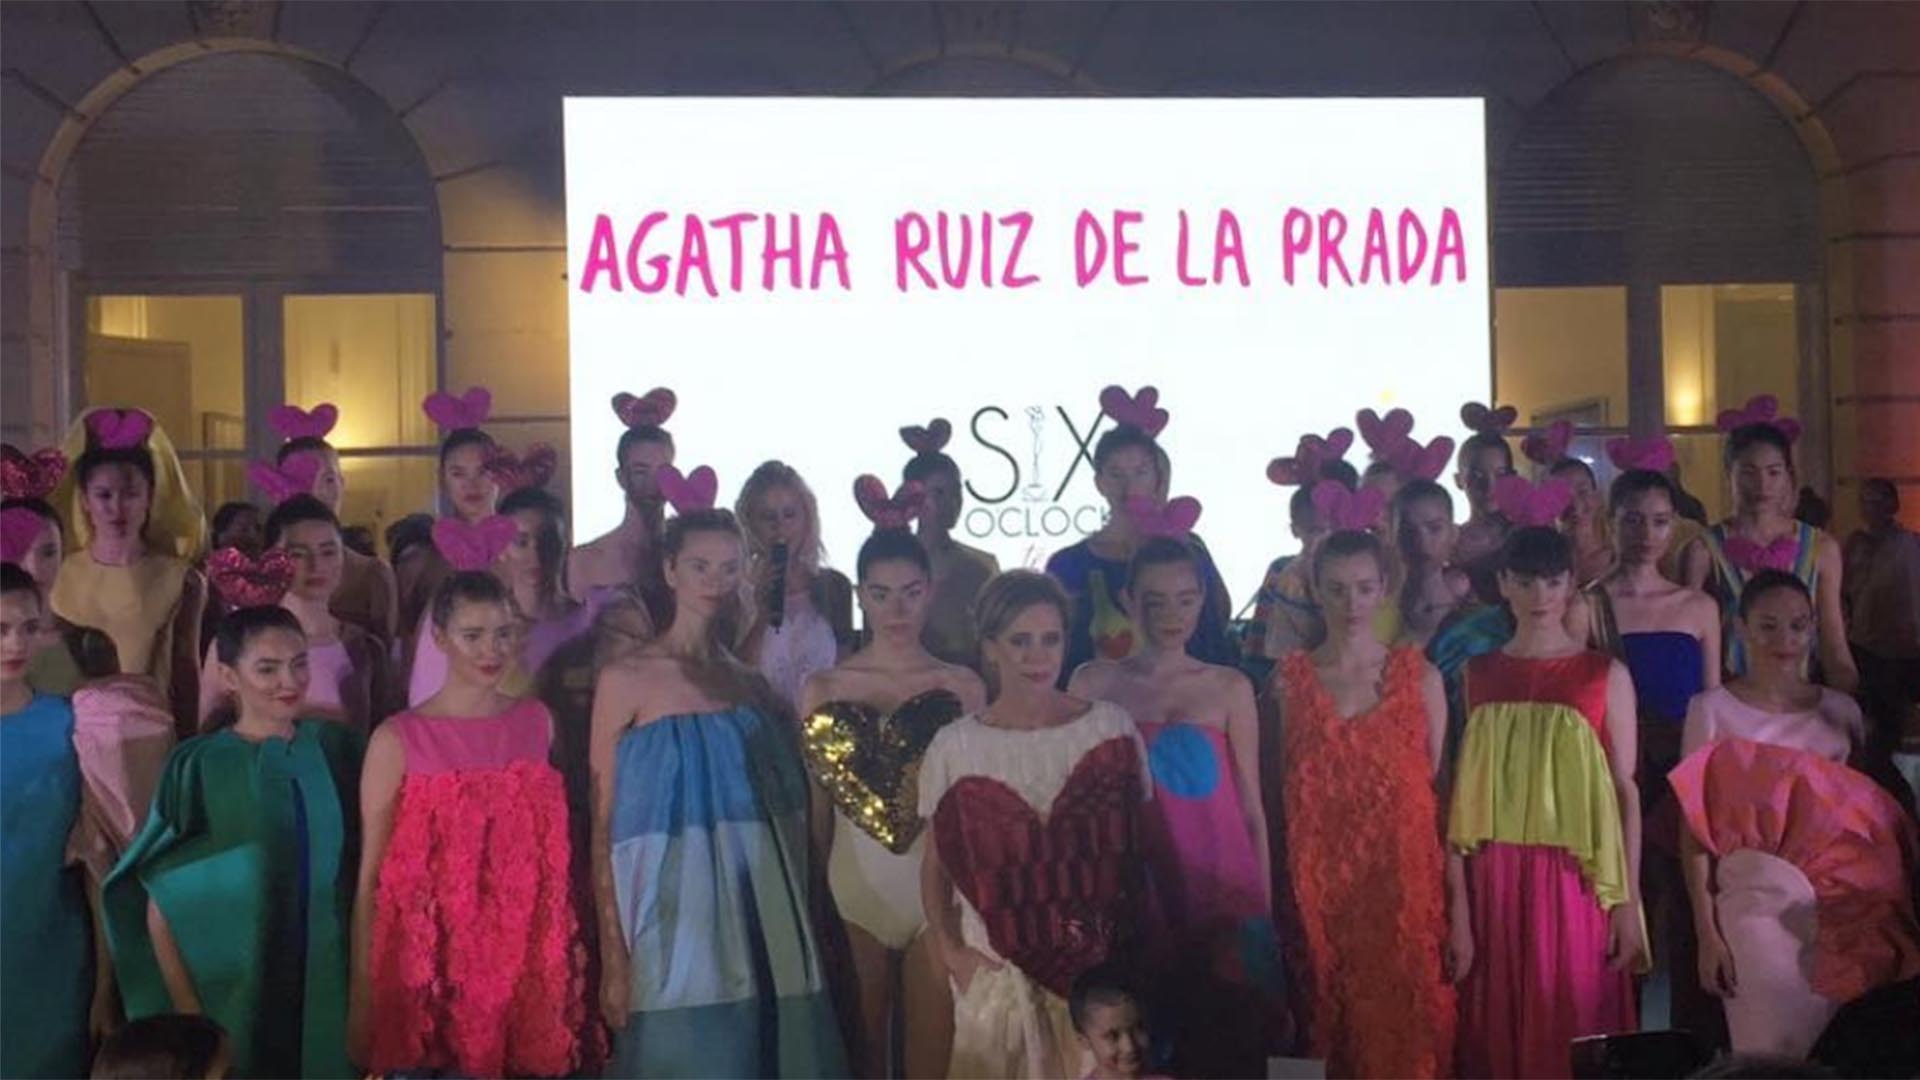 La diseñadora Agatha Ruiz de la Prada presentó su colección de verano 